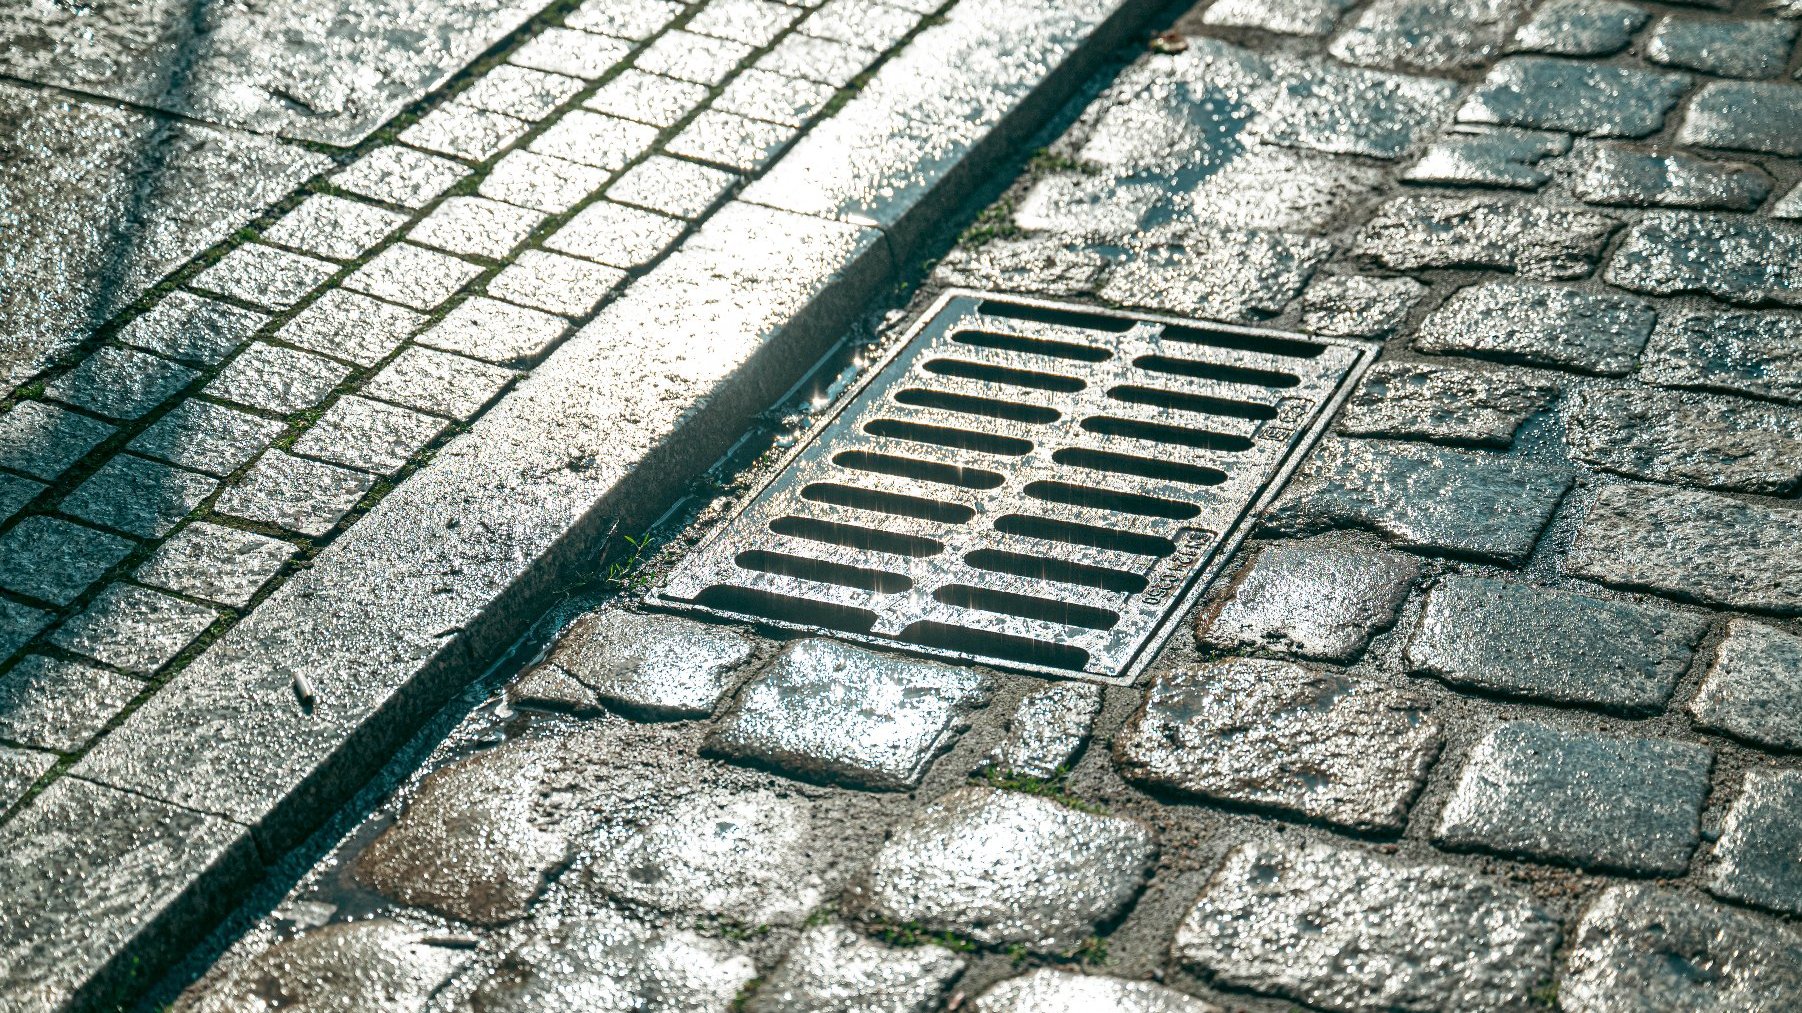 Zdjęcie przedstawia kratkę kanalizacyjną na ulicy.